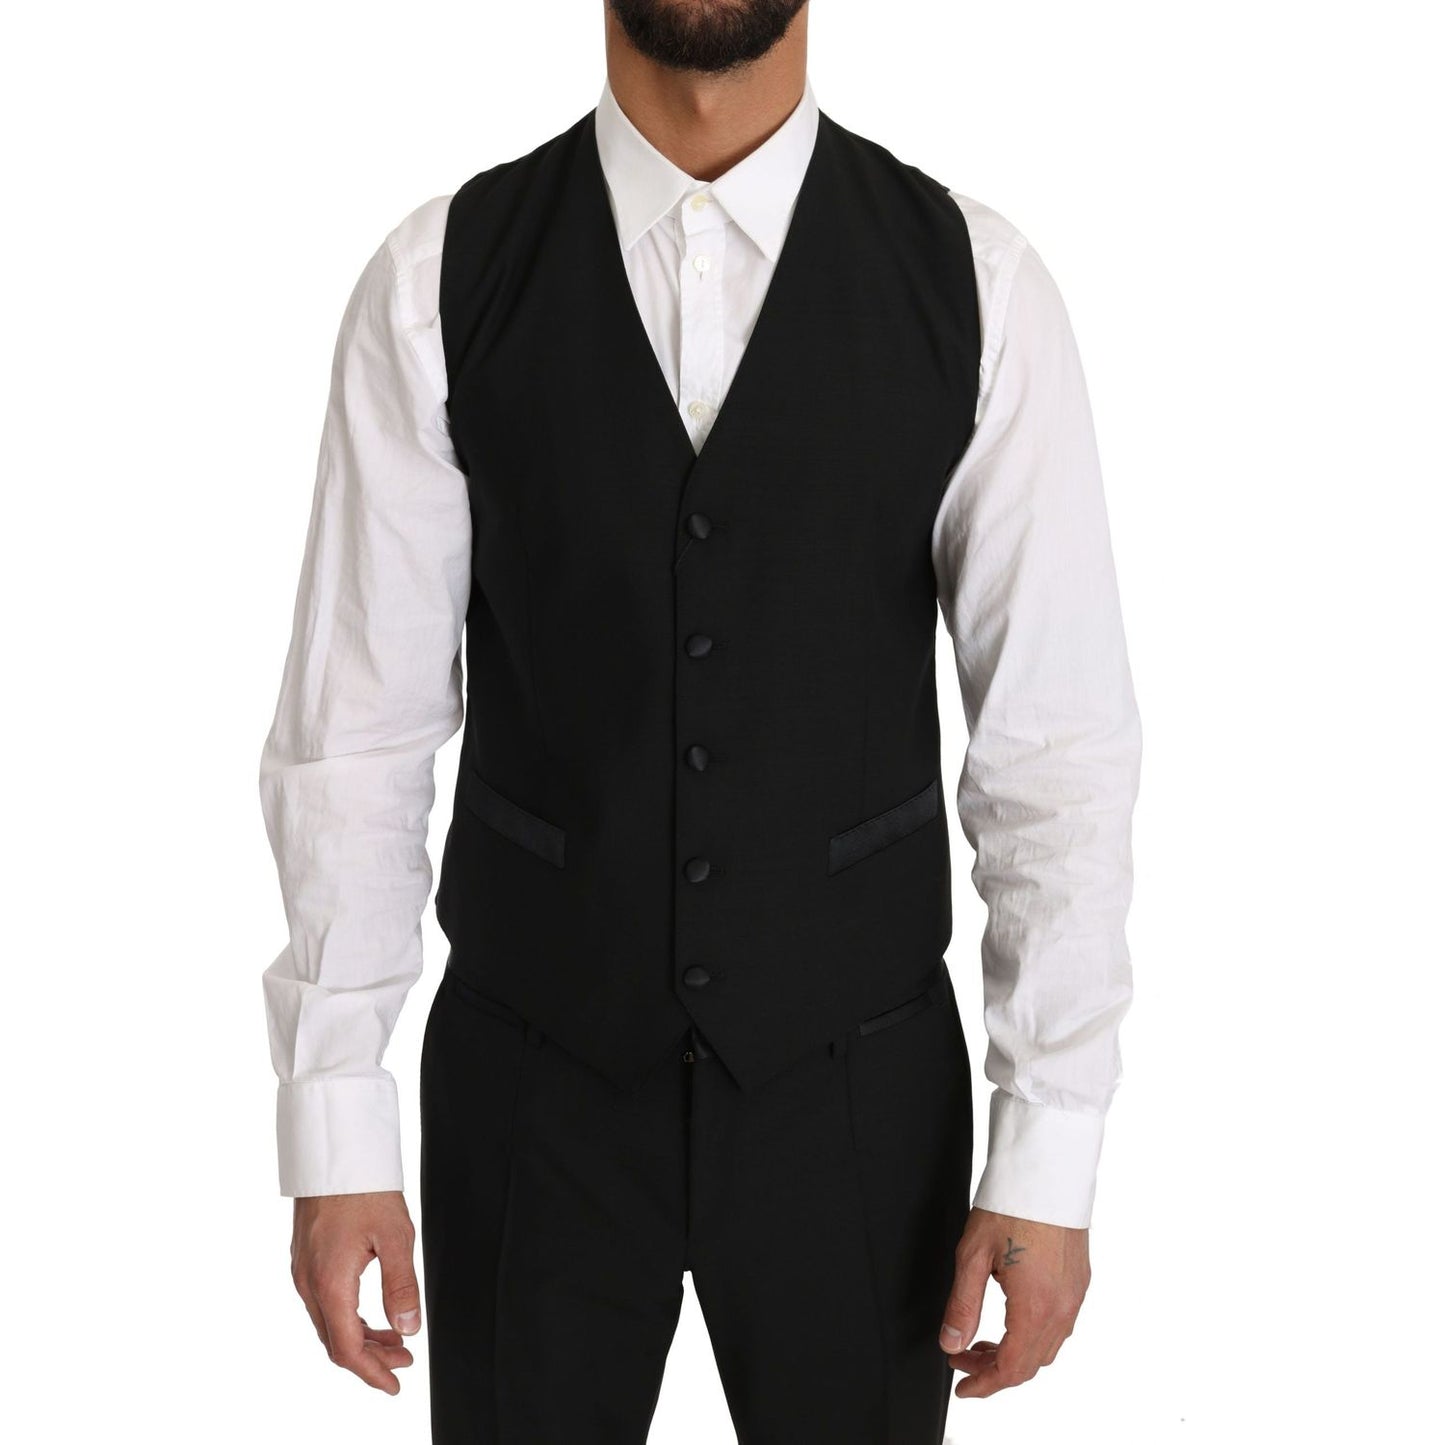 Dolce & Gabbana Sleek Black Slim Fit Formal Vest black-wool-dress-waistcoat-gillet-vest IMG_2986-scaled-a4ee20be-dff.jpg